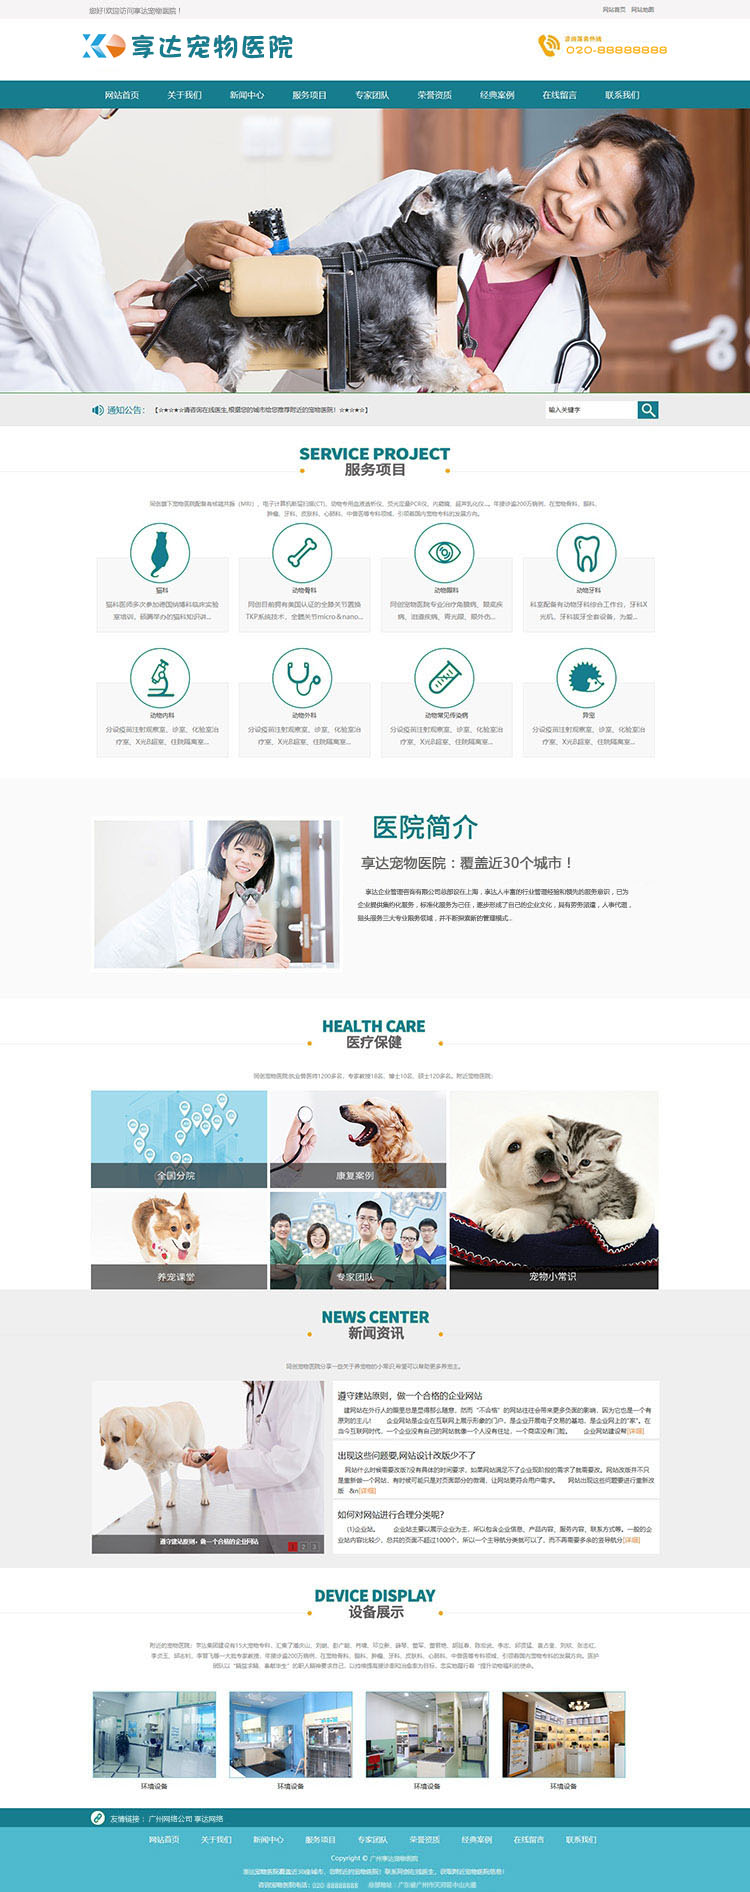 宠物美容师培训中心网站设计 | 宠物美容院网站制作